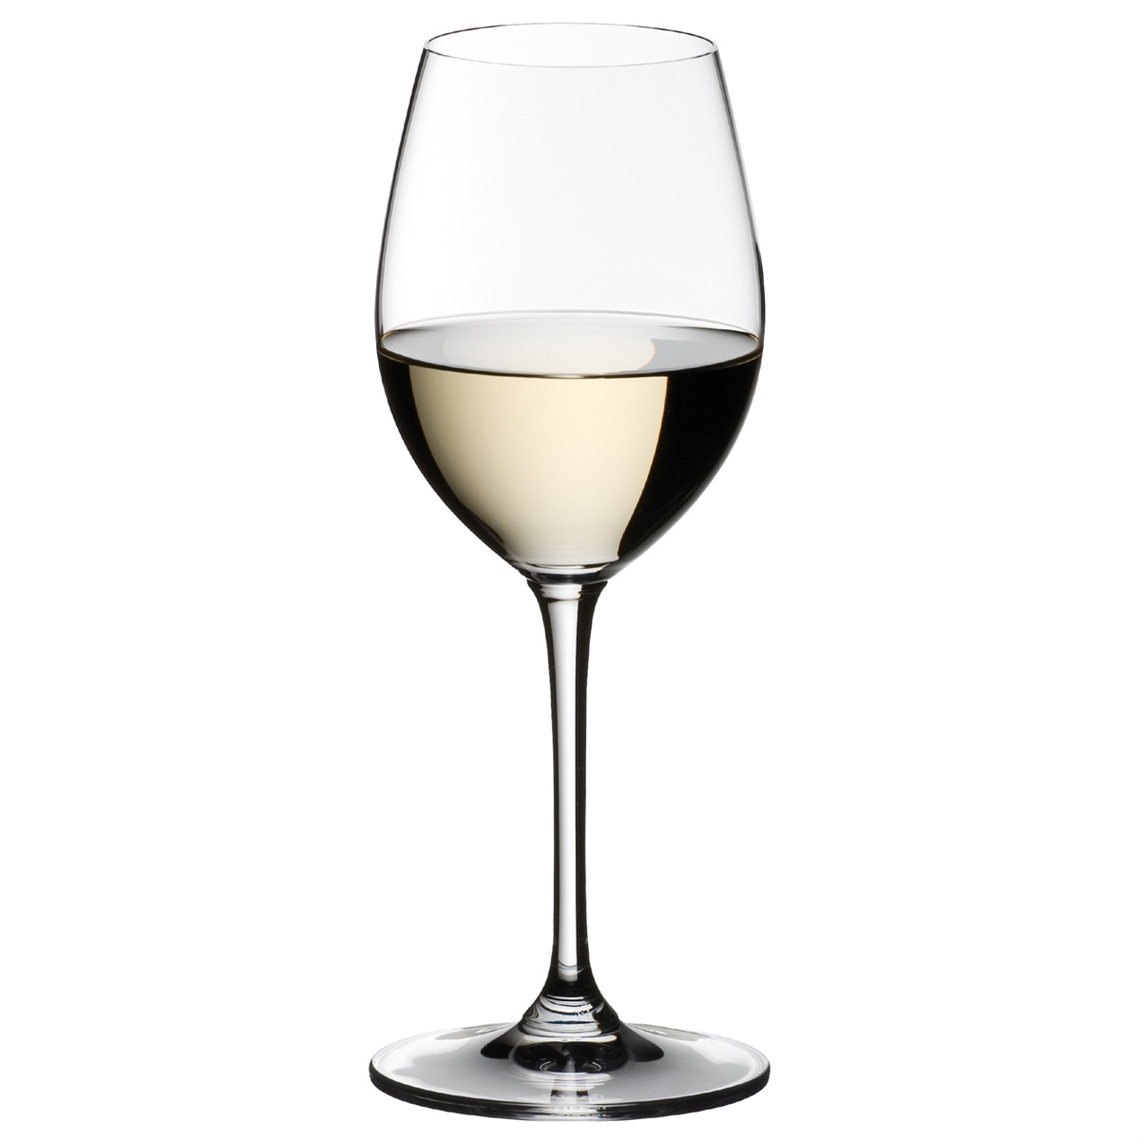 View more restaurant glasses - glencairn from our Dessert Wine Glasses range